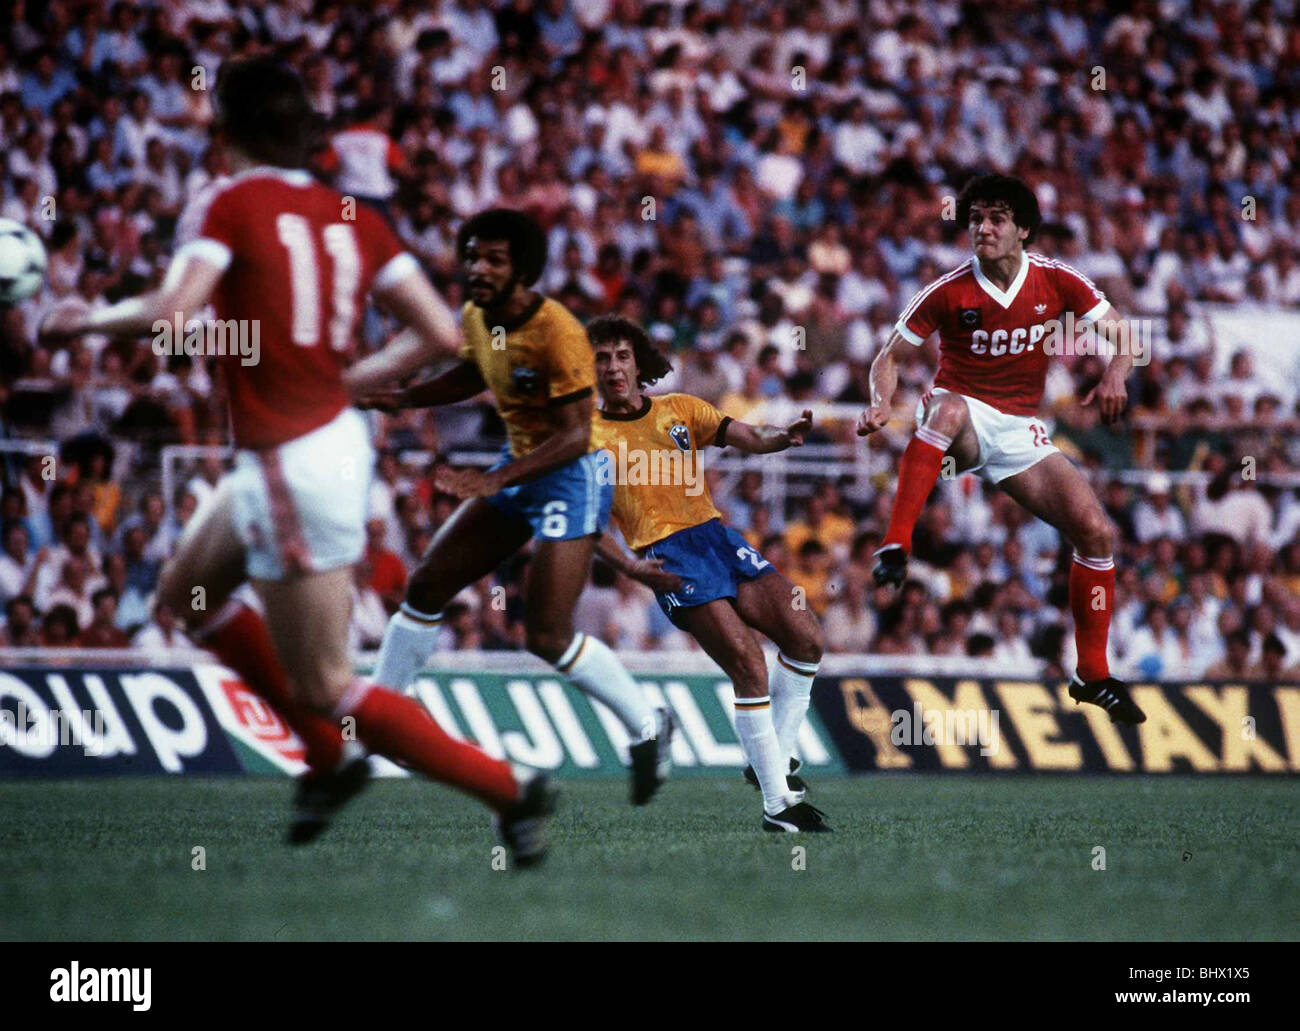 World Cup 1982 gruppo 6 Brasile 2 Russia 1 Andrei Bal prende la guida per l'Unione sovietica la Russia come Oleg Blokhin (11) Junior (6) a guardare. Sanchez Pizjuan, Sevilla Foto Stock